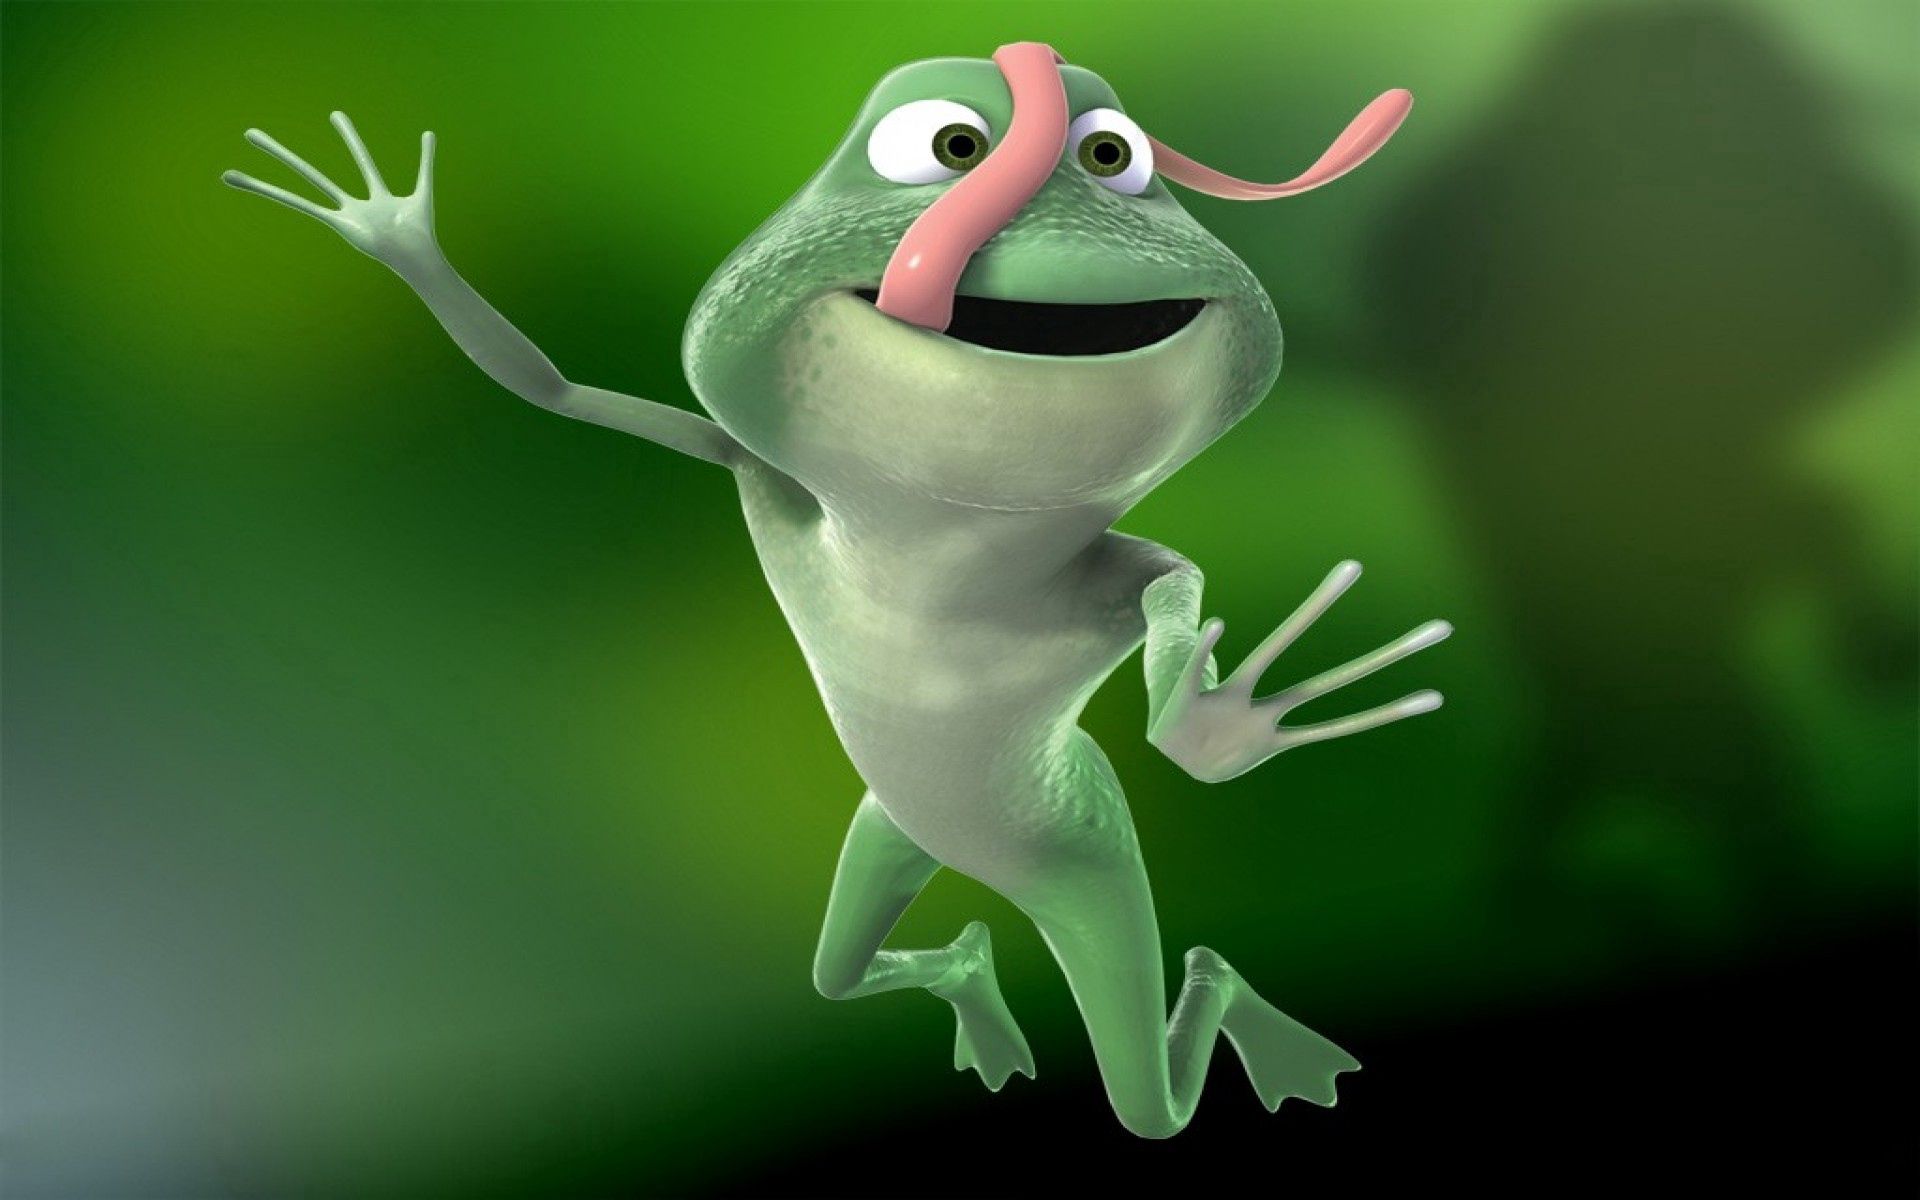 3d, green, pink, bounce, jump, language, tongue, long, frog